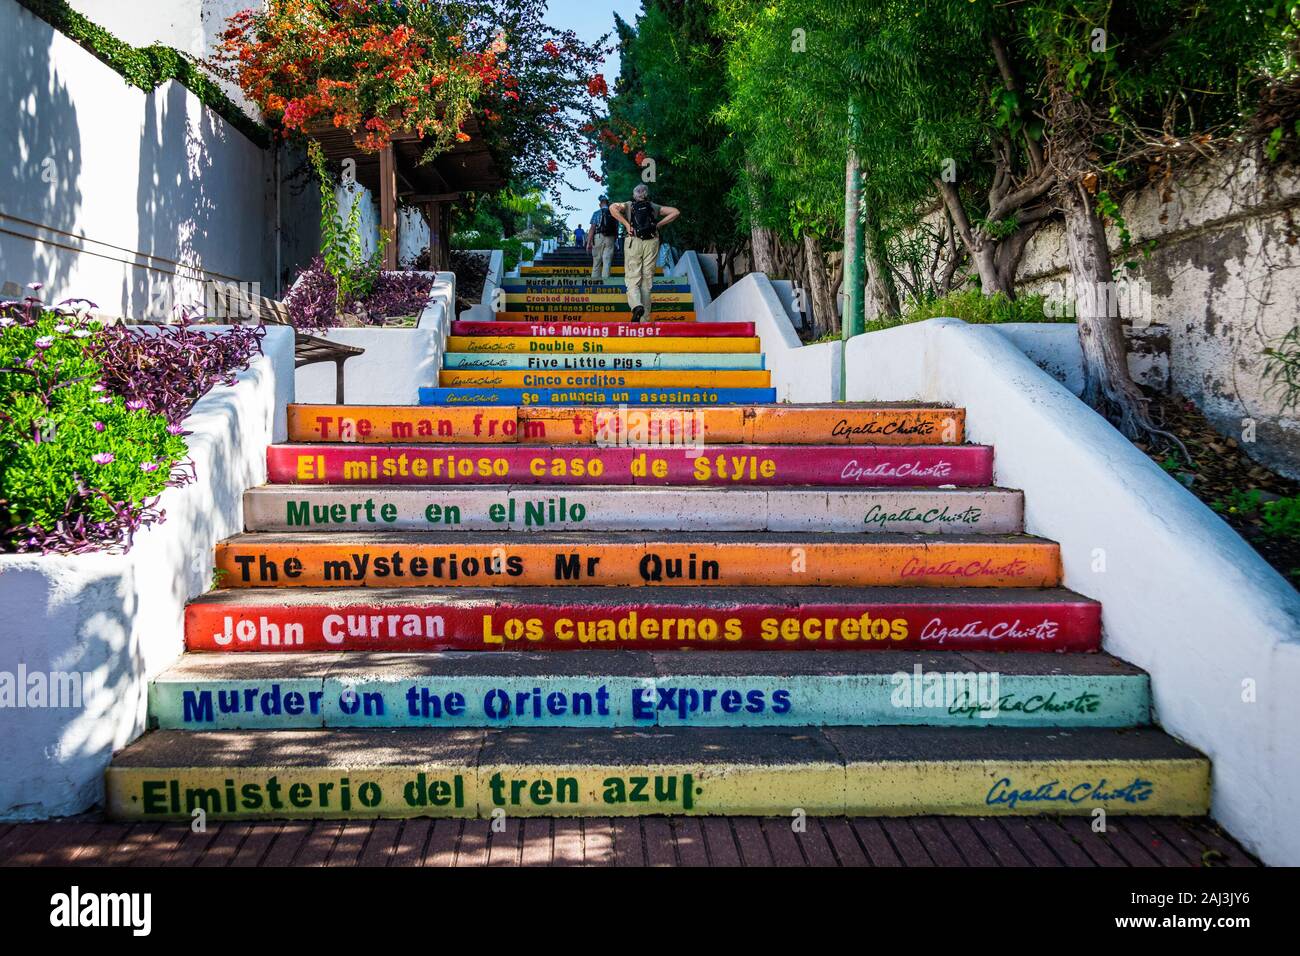 Ältere touristische Paar klettern bunte Treppe mit Buch von Agatha Christie Titel auf ihnen in Puerto de la Cruz, Teneriffa, Spanien geschrieben. Stockfoto